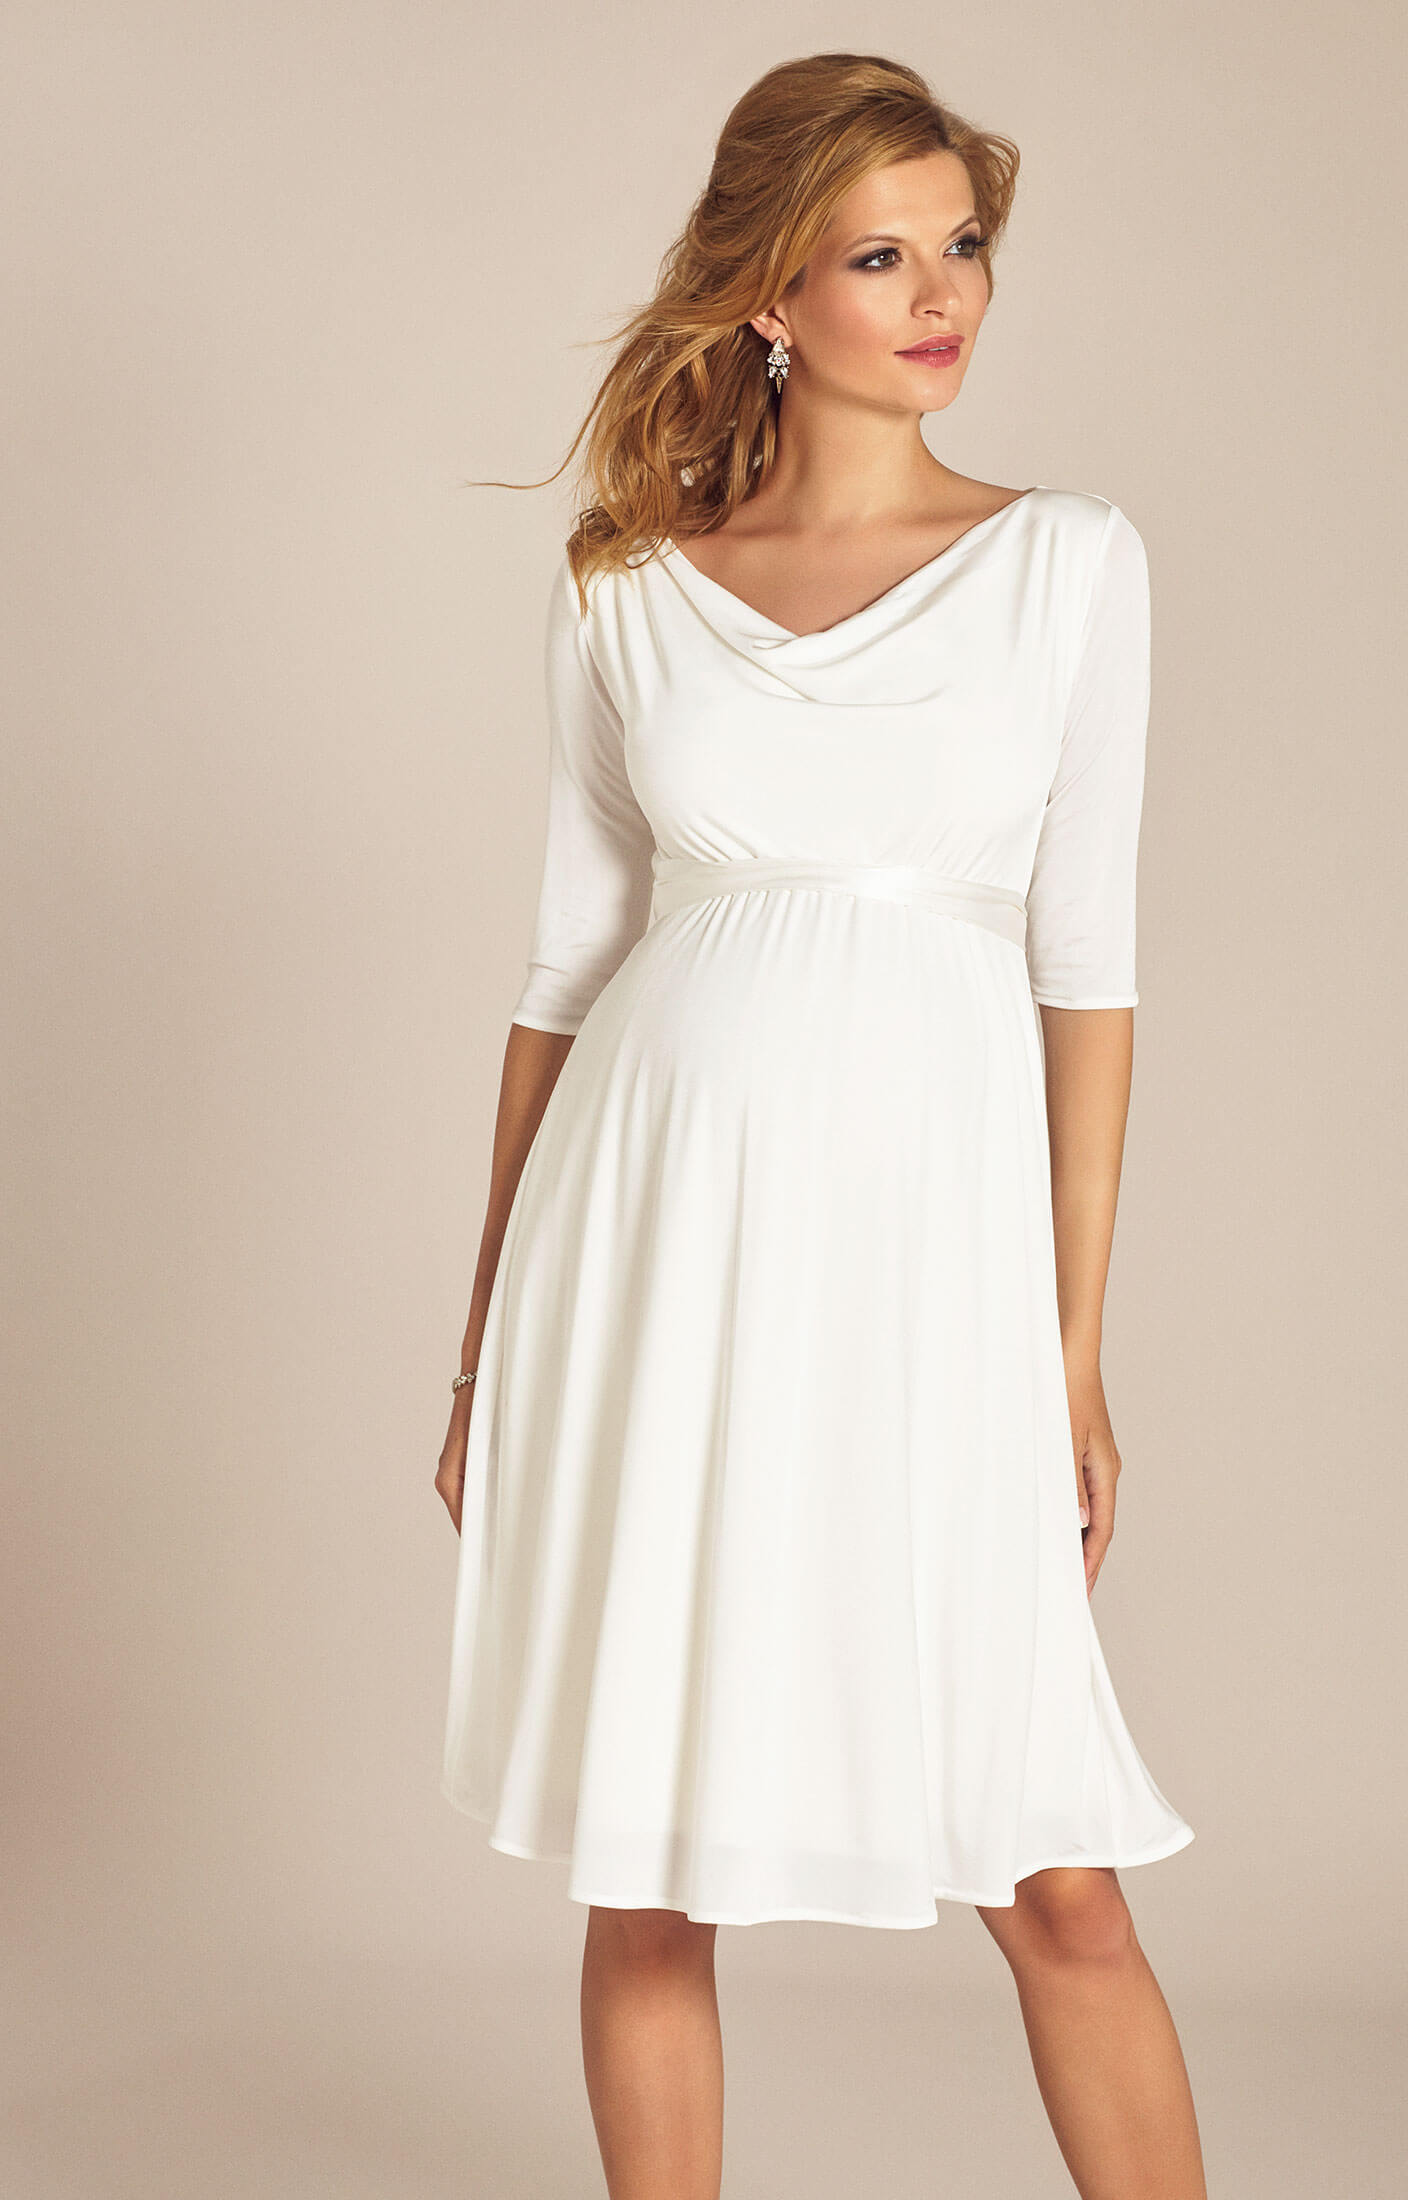 Праздничные белые платья. Белое платье. Платье нарядное для беременных. Белое платье для беременных. Нарядные платья для беременных на свадьбу.